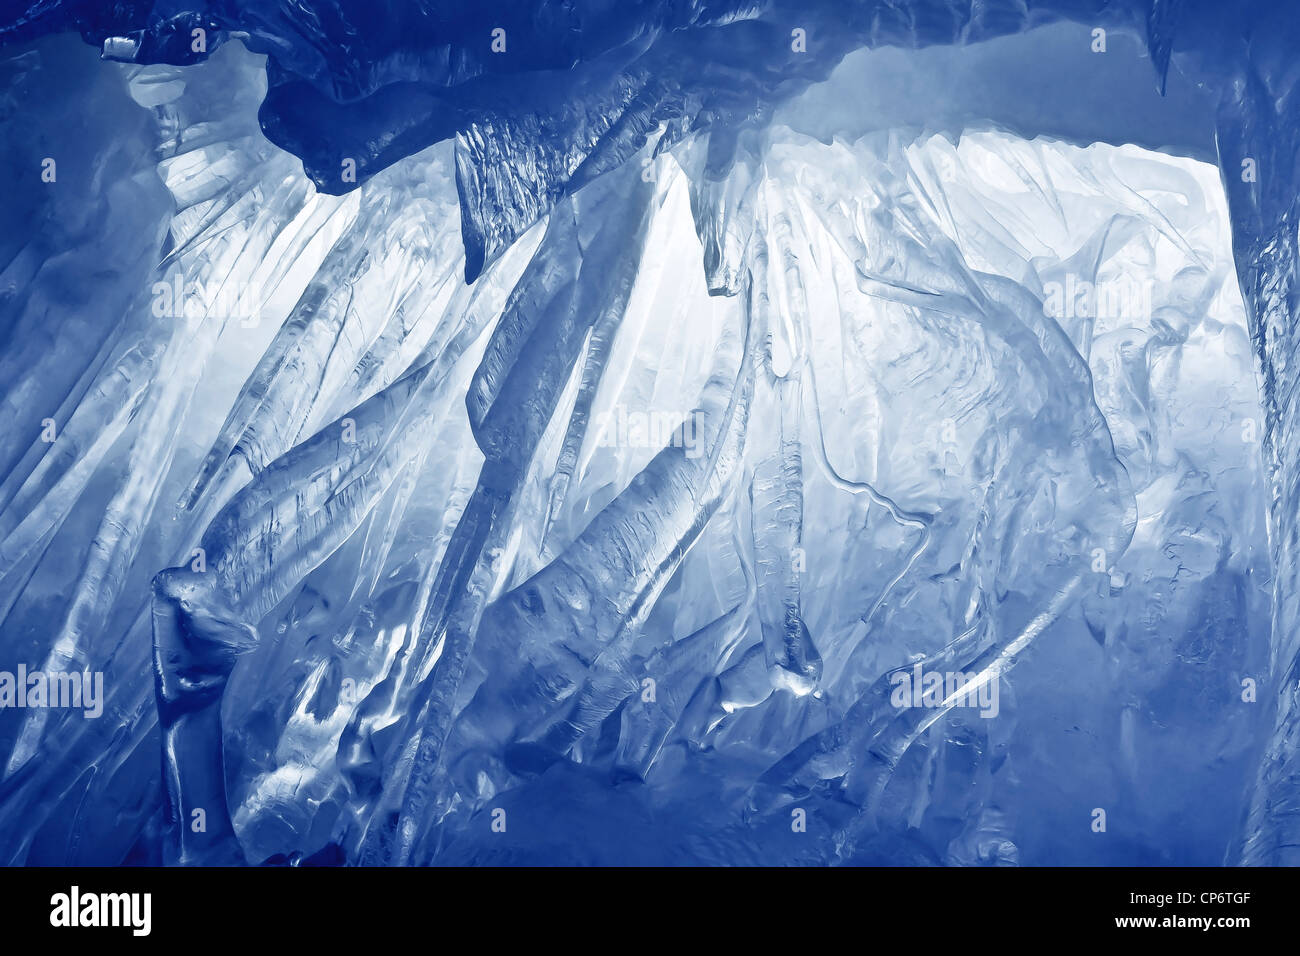 Blu grotta del ghiaccio coperto di neve e inondato di luce Foto Stock